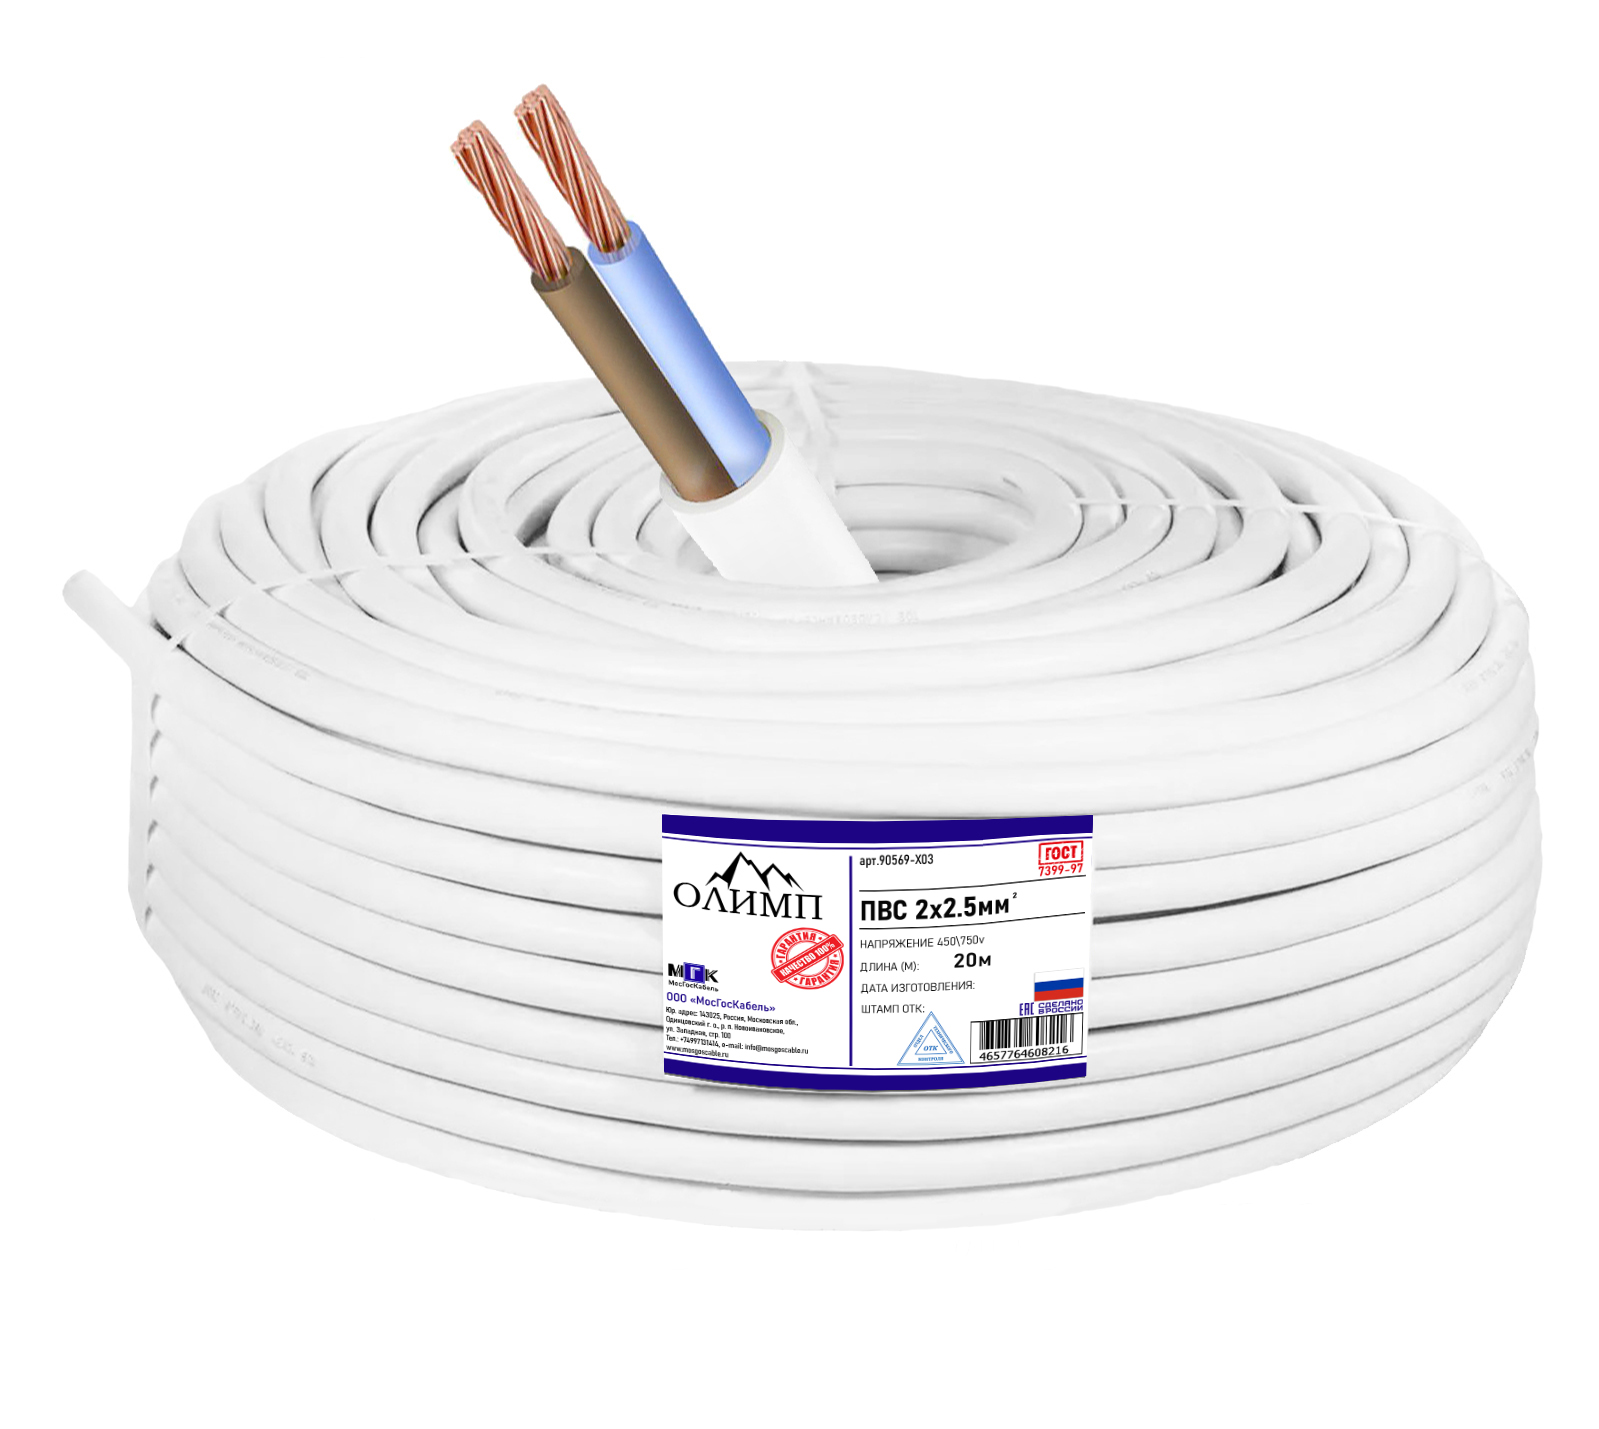 Силовой кабель ПВС ОЛИМП ГОСТ 2x2.5мм 20м 90569-X03